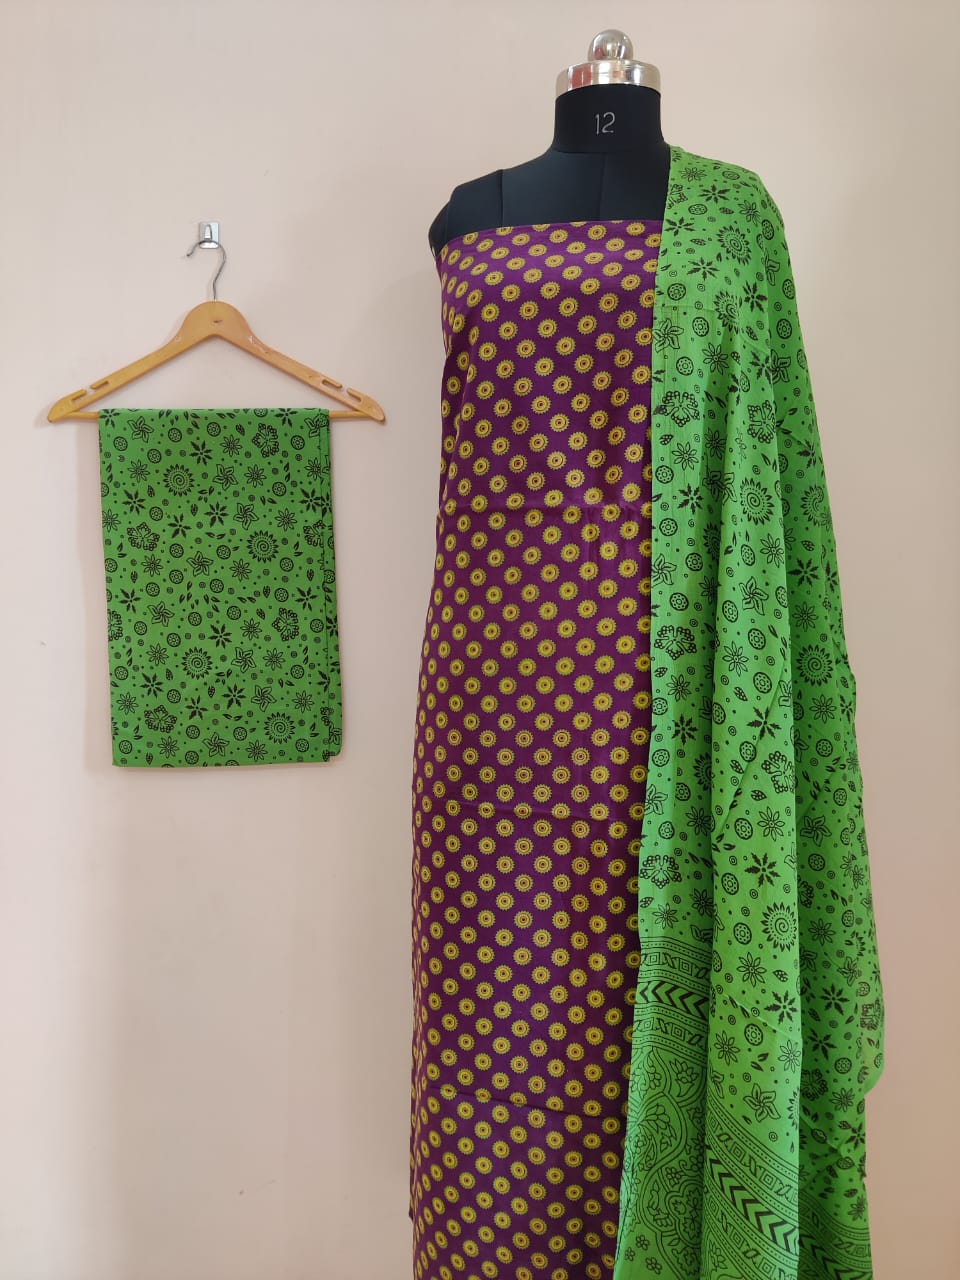 Kutchi block print Dress Material